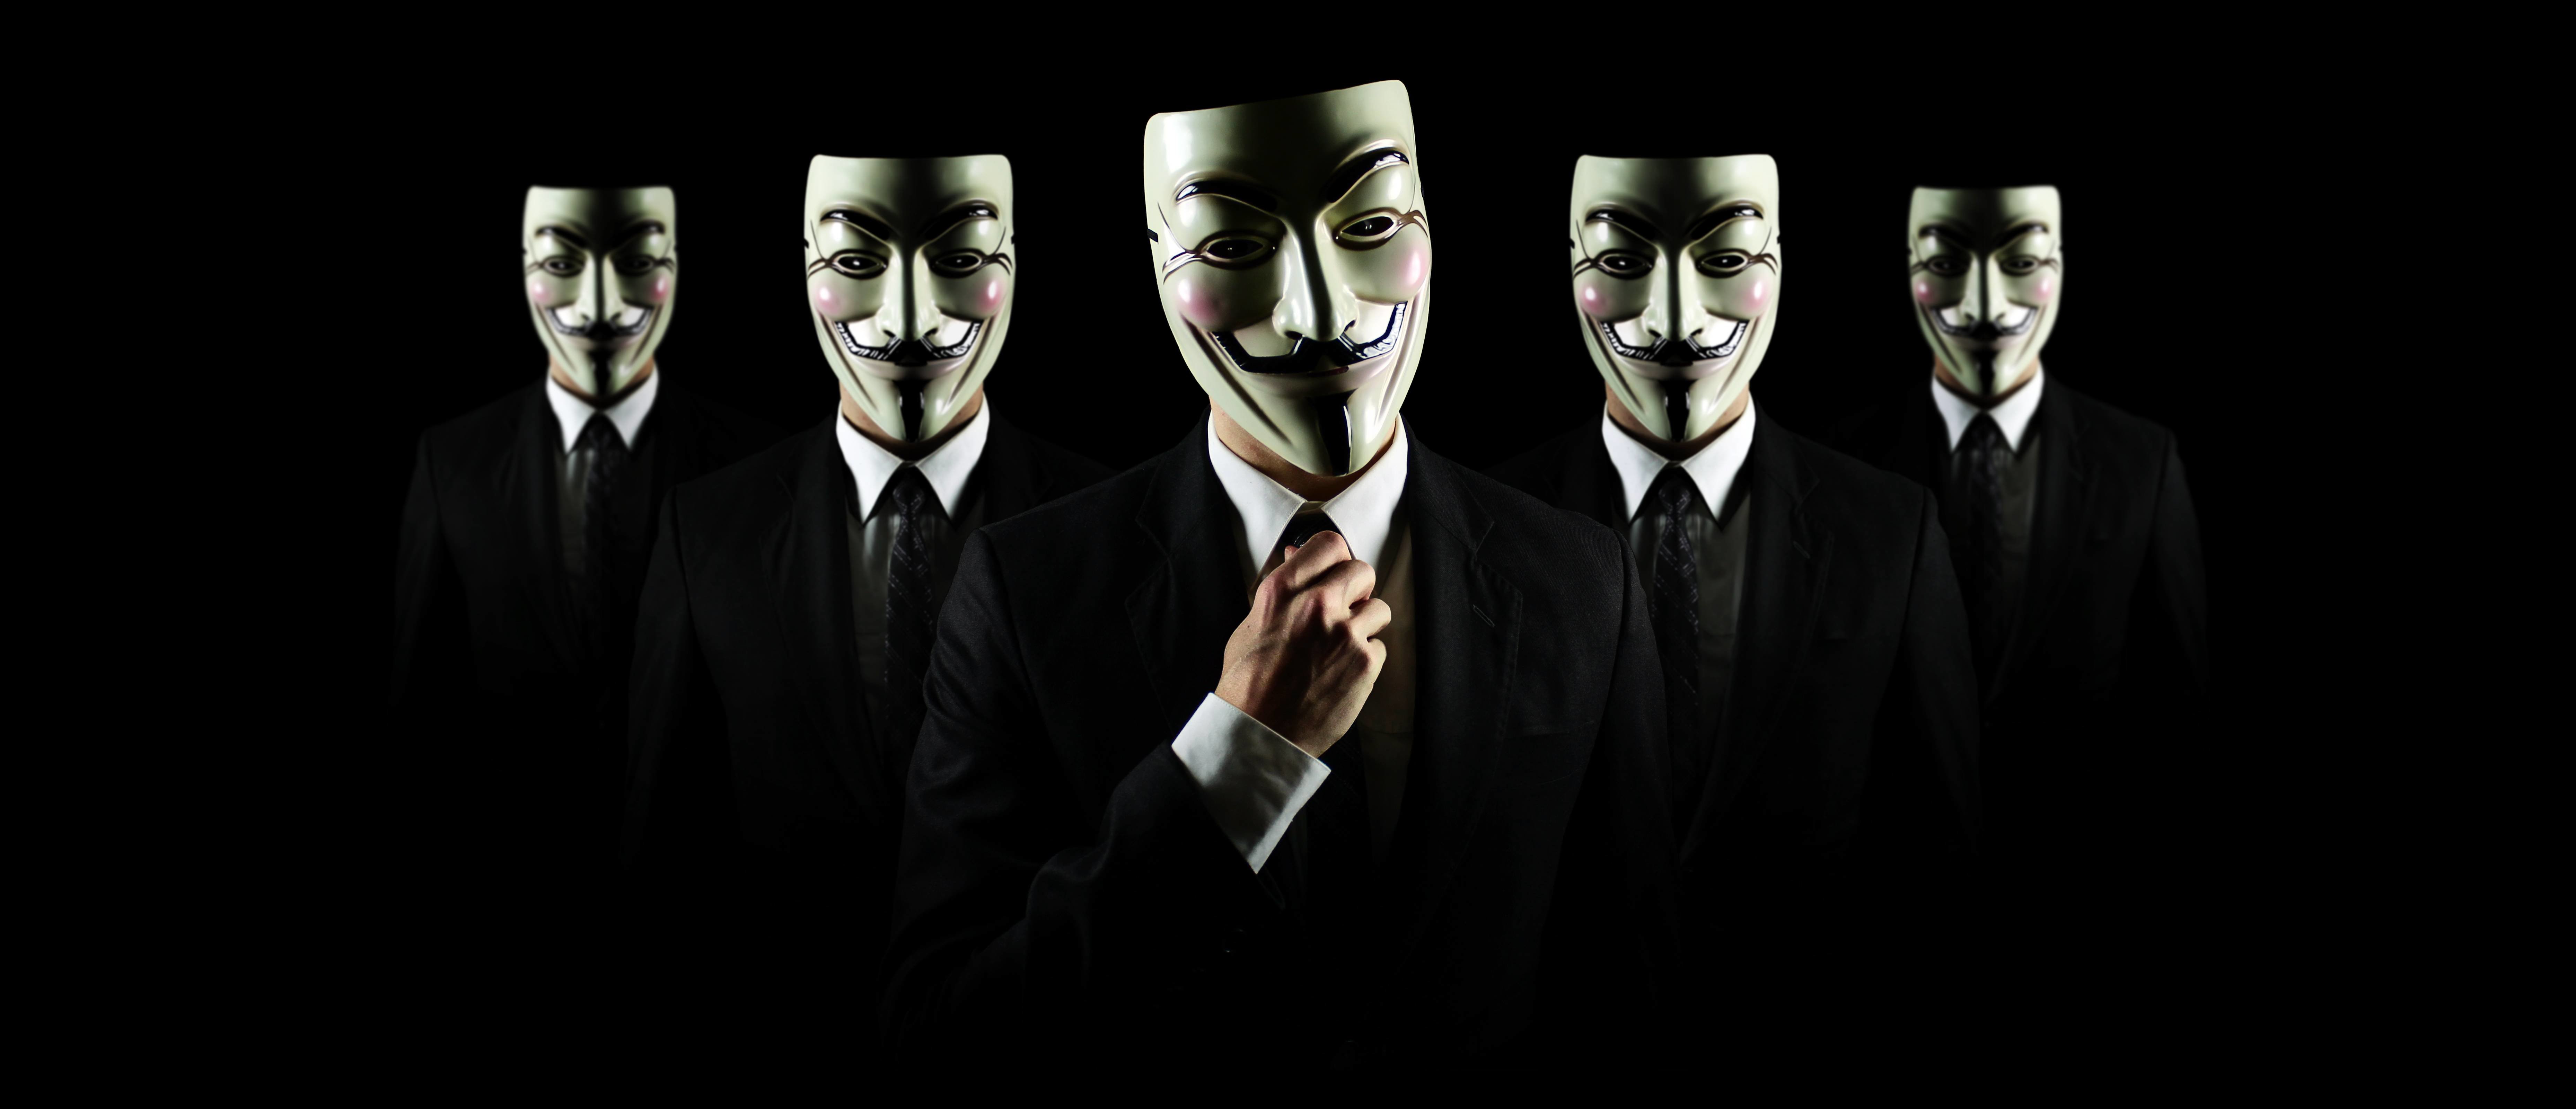 20+ 4K Anonymous Fondos de pantalla | Fondos de Escritorio